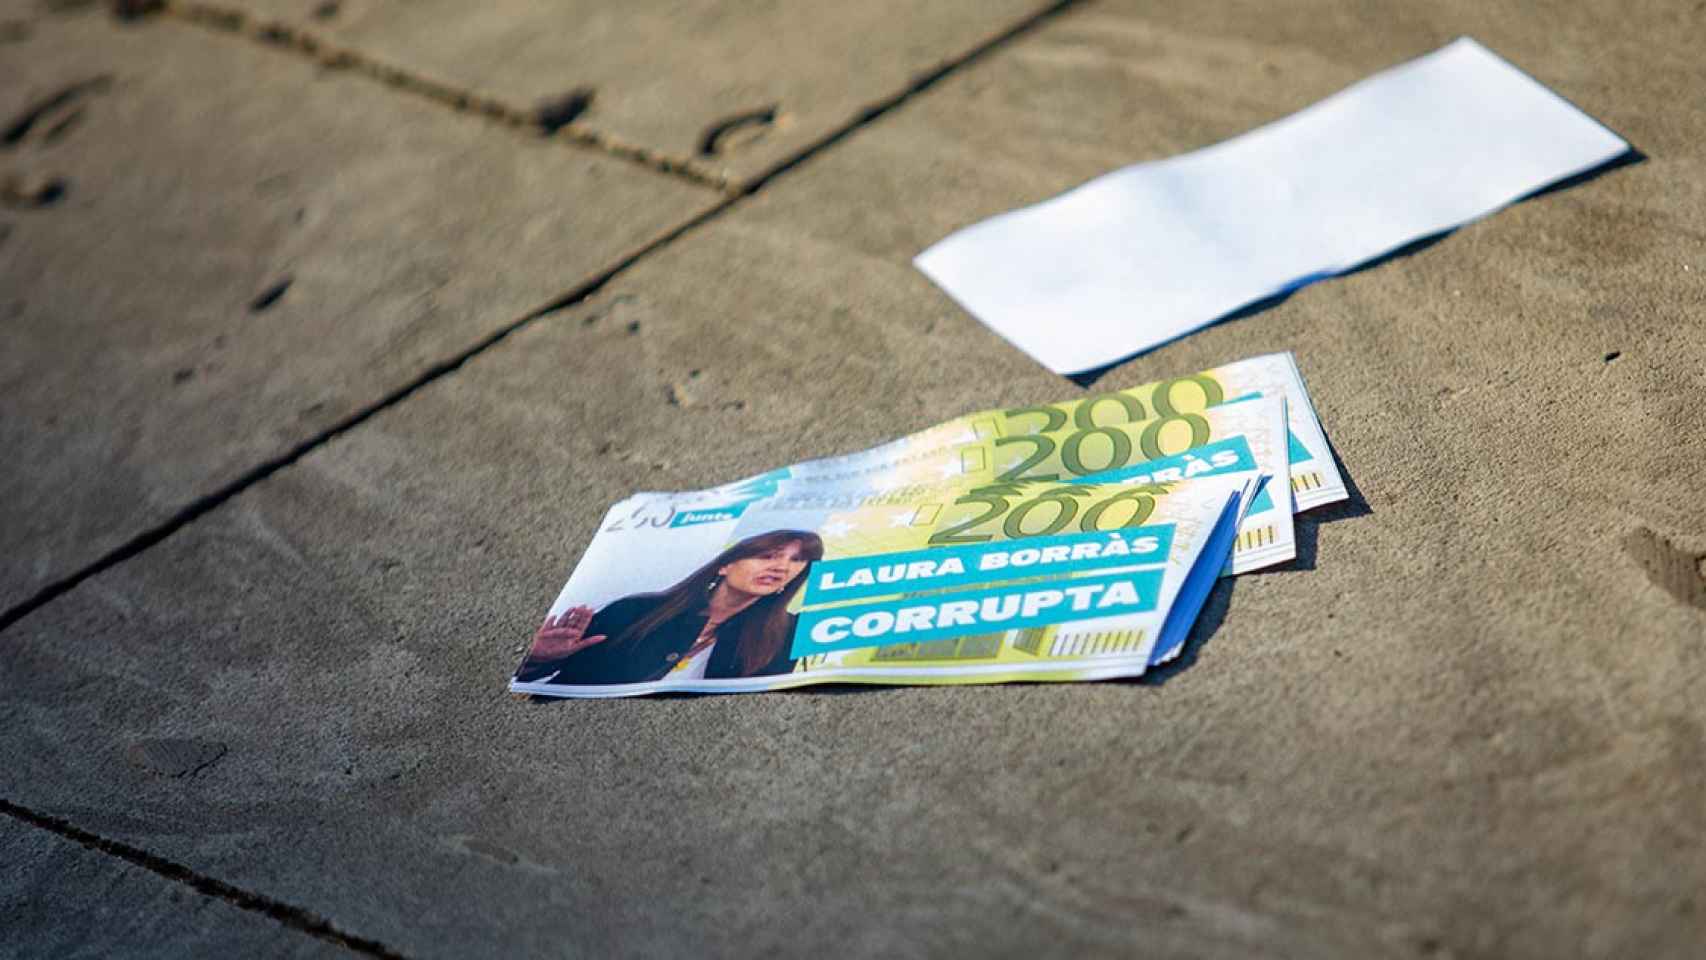 Una persona lanza billetes falsos de 200 con el mensaje 'Laura Borràs corrupta' / EUROPA PRESS